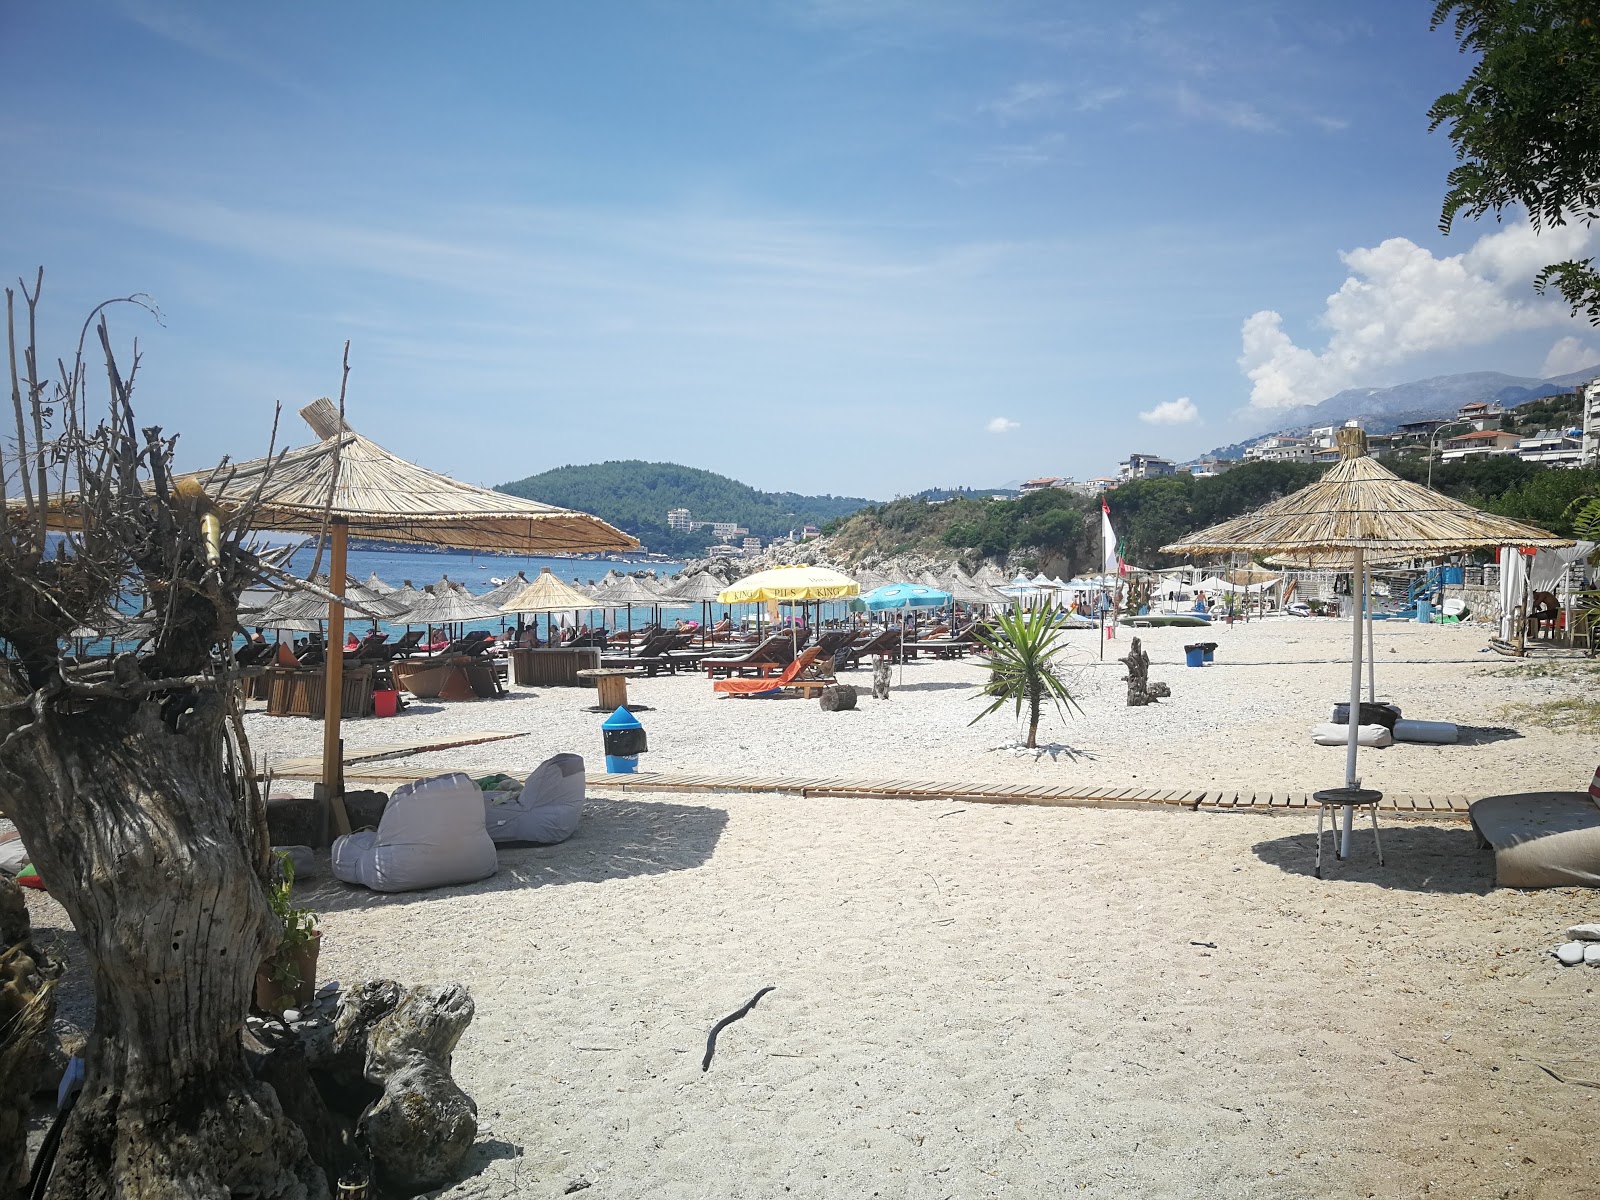 Foto af Prinos beach - populært sted blandt afslapningskendere